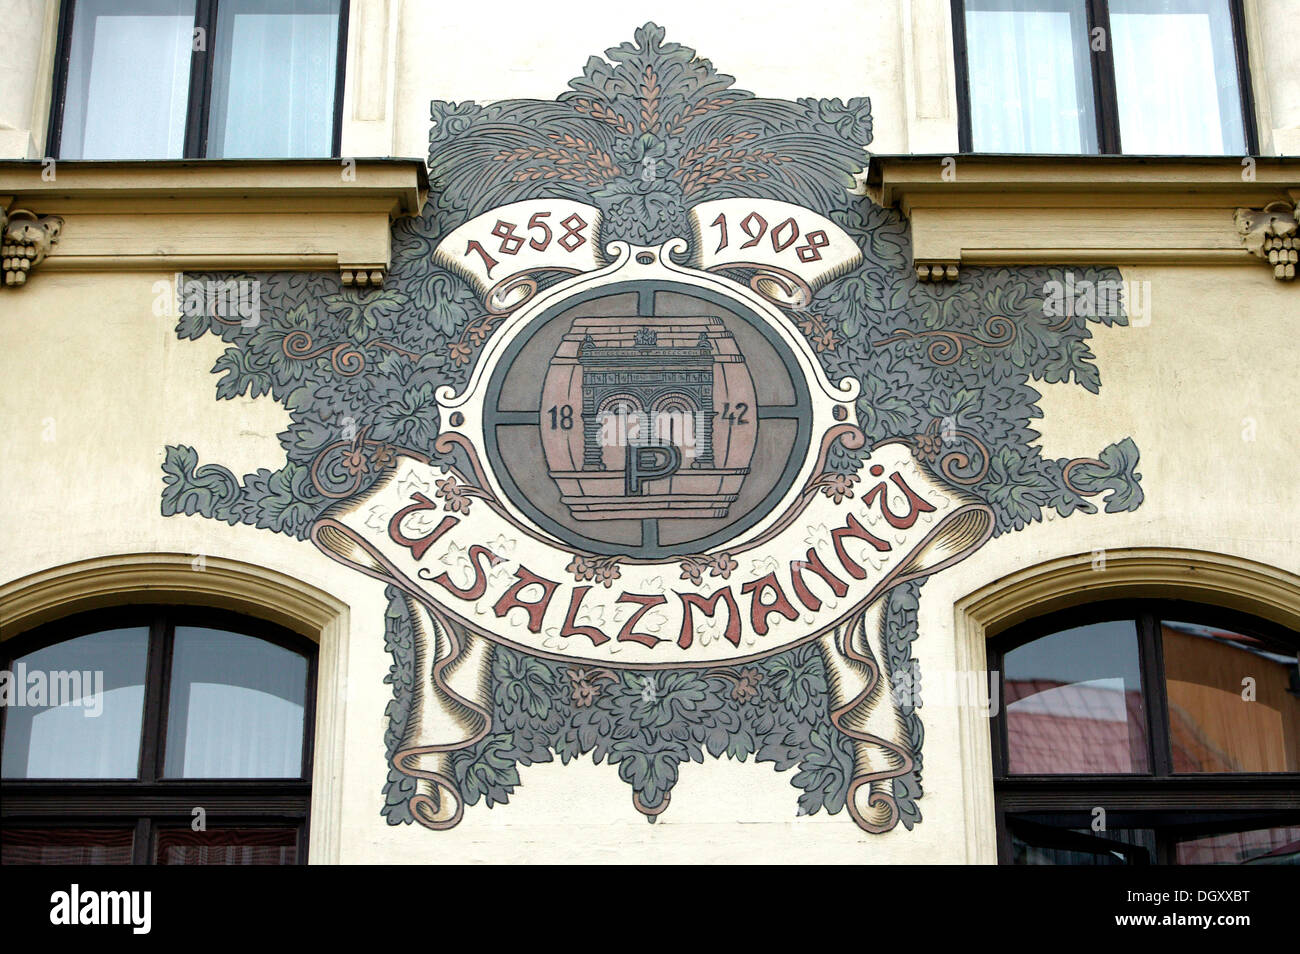 La pintura de la pared en la famosa taberna y U Sulzmannu bierkeller, desde donde la fama de la famosa cerveza Pilsner ha tomado su Foto de stock